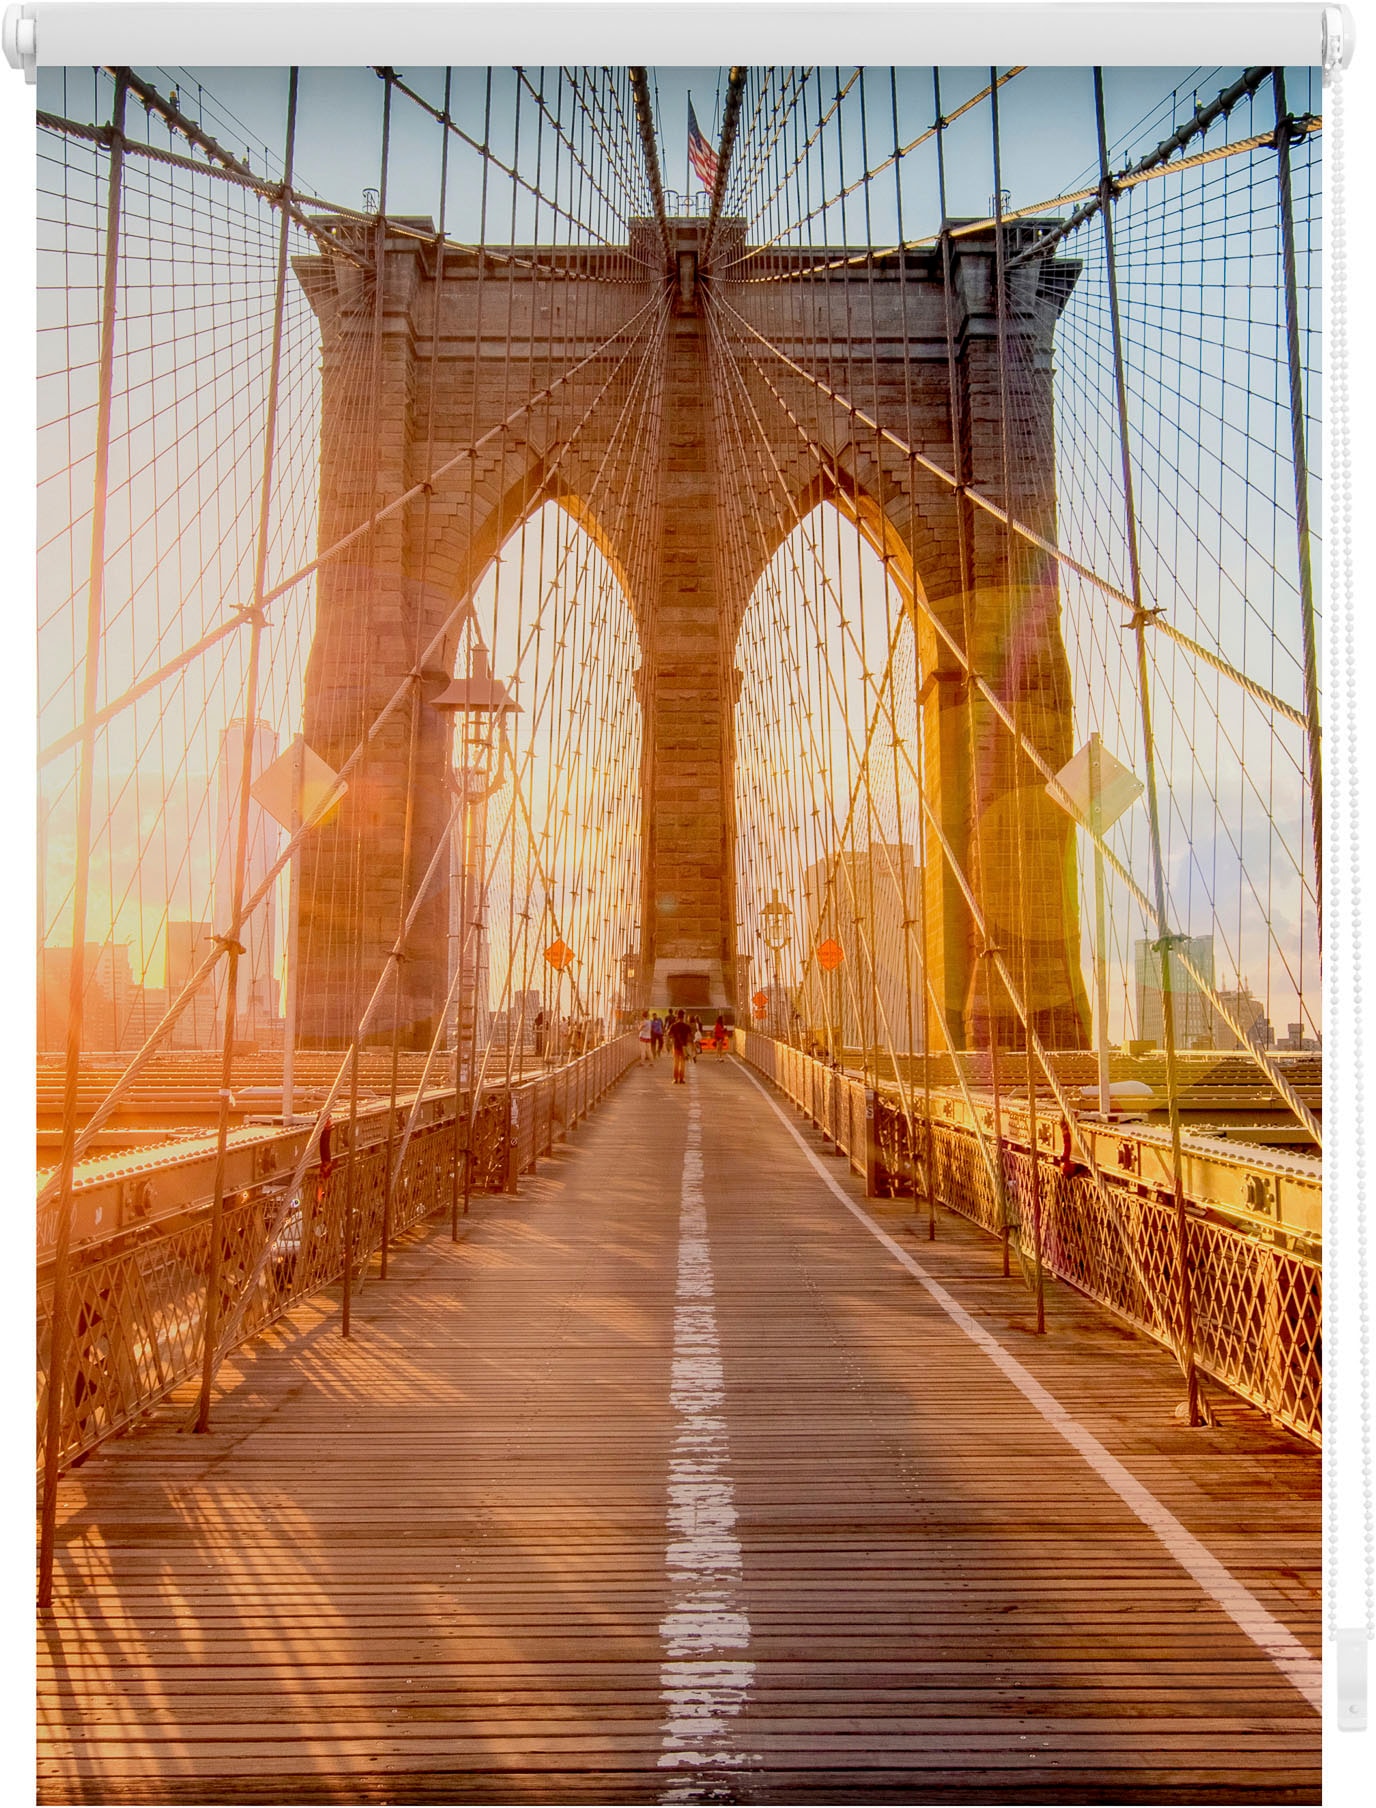 LICHTBLICK ORIGINAL Seitenzugrollo »Klemmfix Motiv Brooklyn Bridge«,  Lichtschutz, ohne Bohren, freihängend, bedruckt bequem und schnell  bestellen